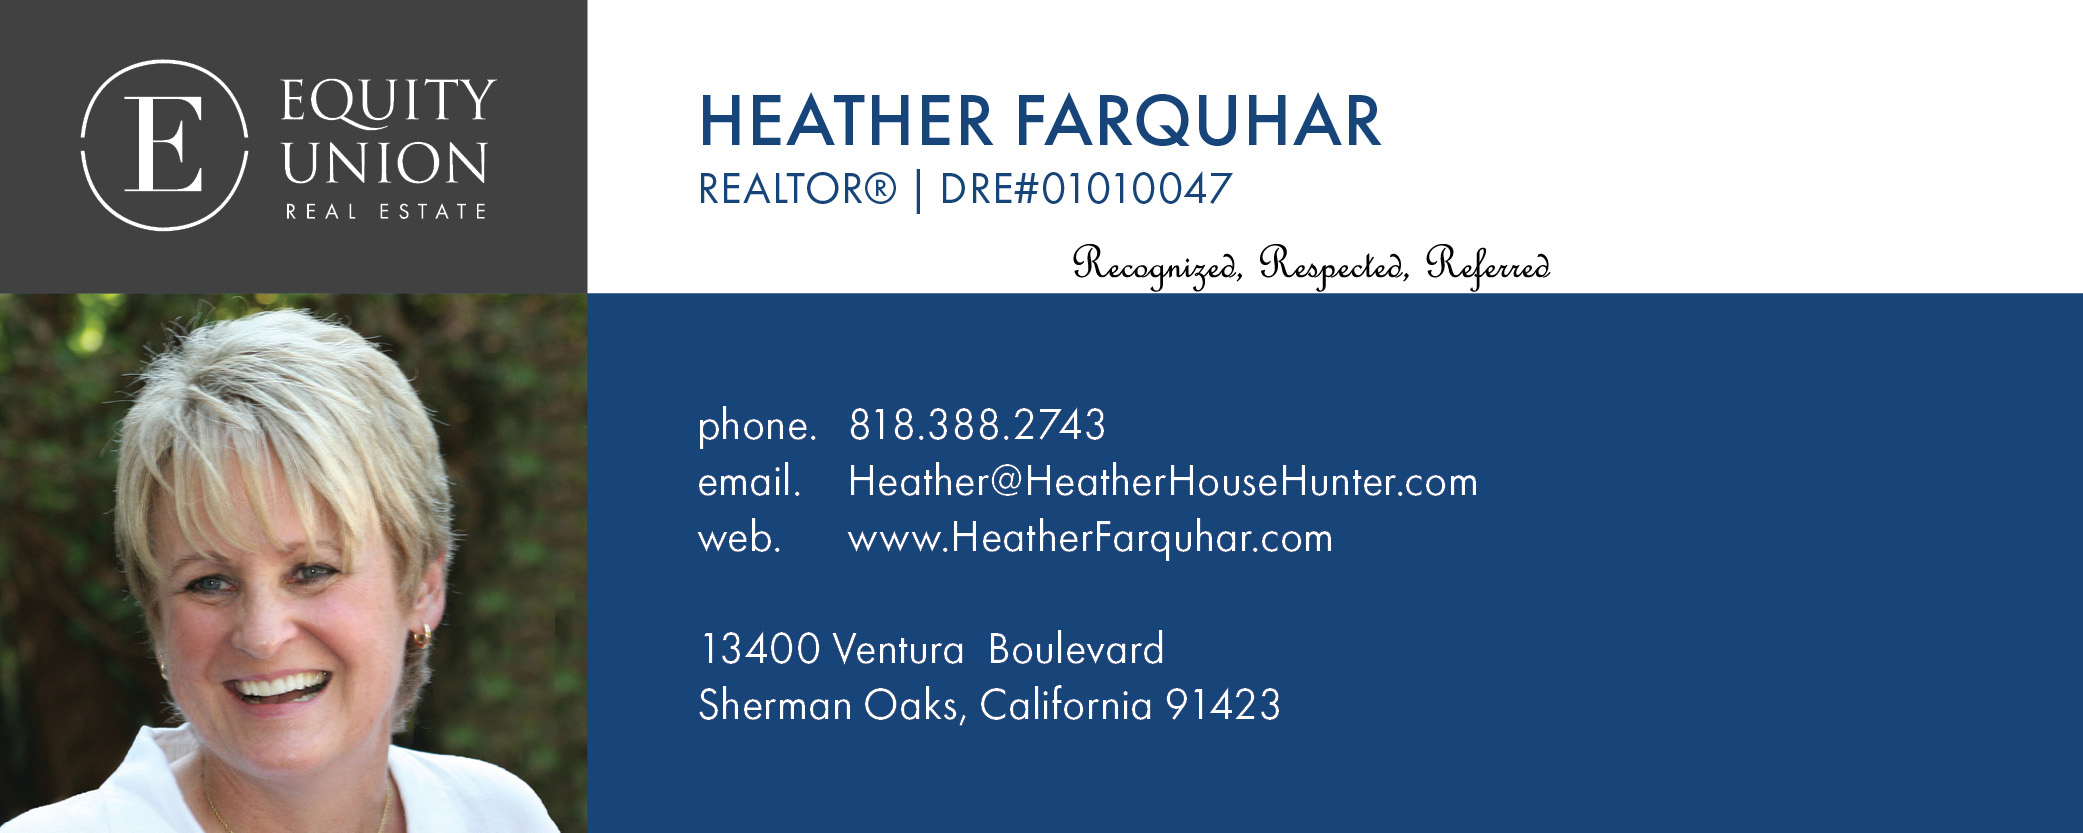 North Hollywood Realtor Heather Farquhar